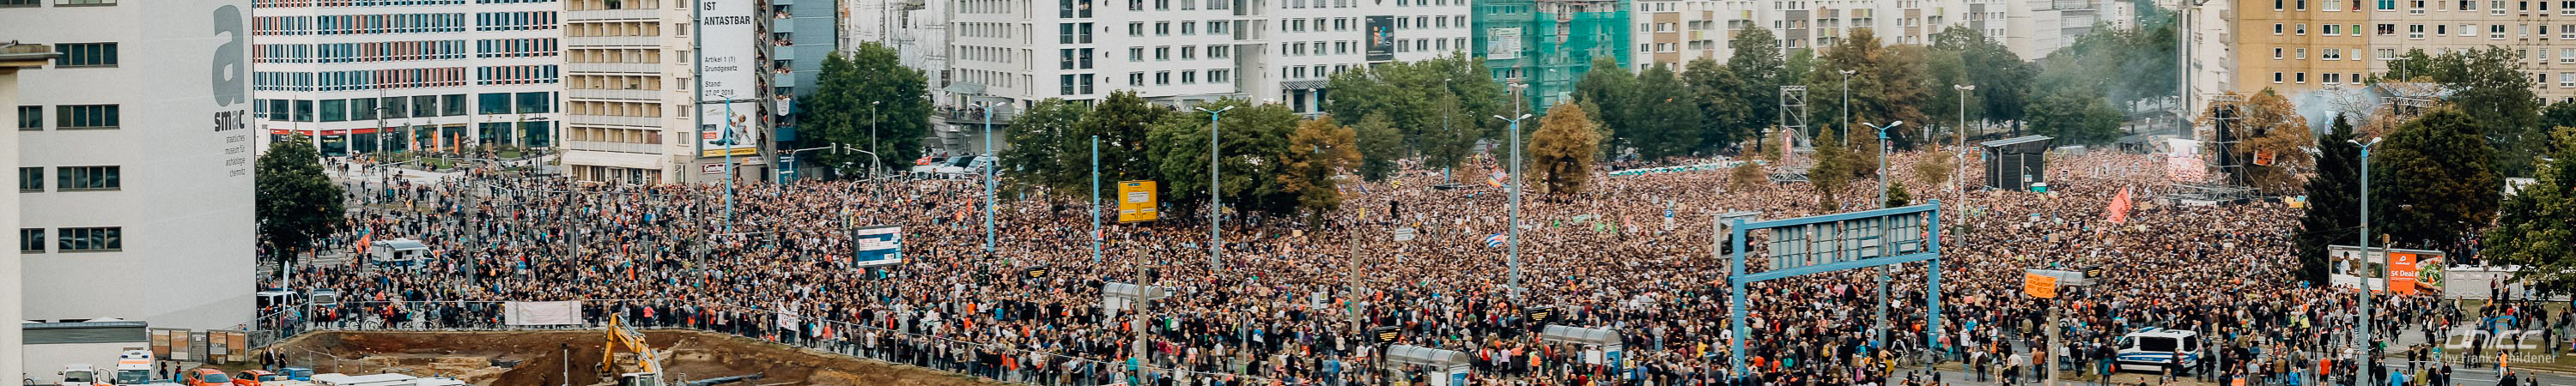 Panorama der Großveranstaltung #wirsindmehr am 03.09.2018 in Chemnitz